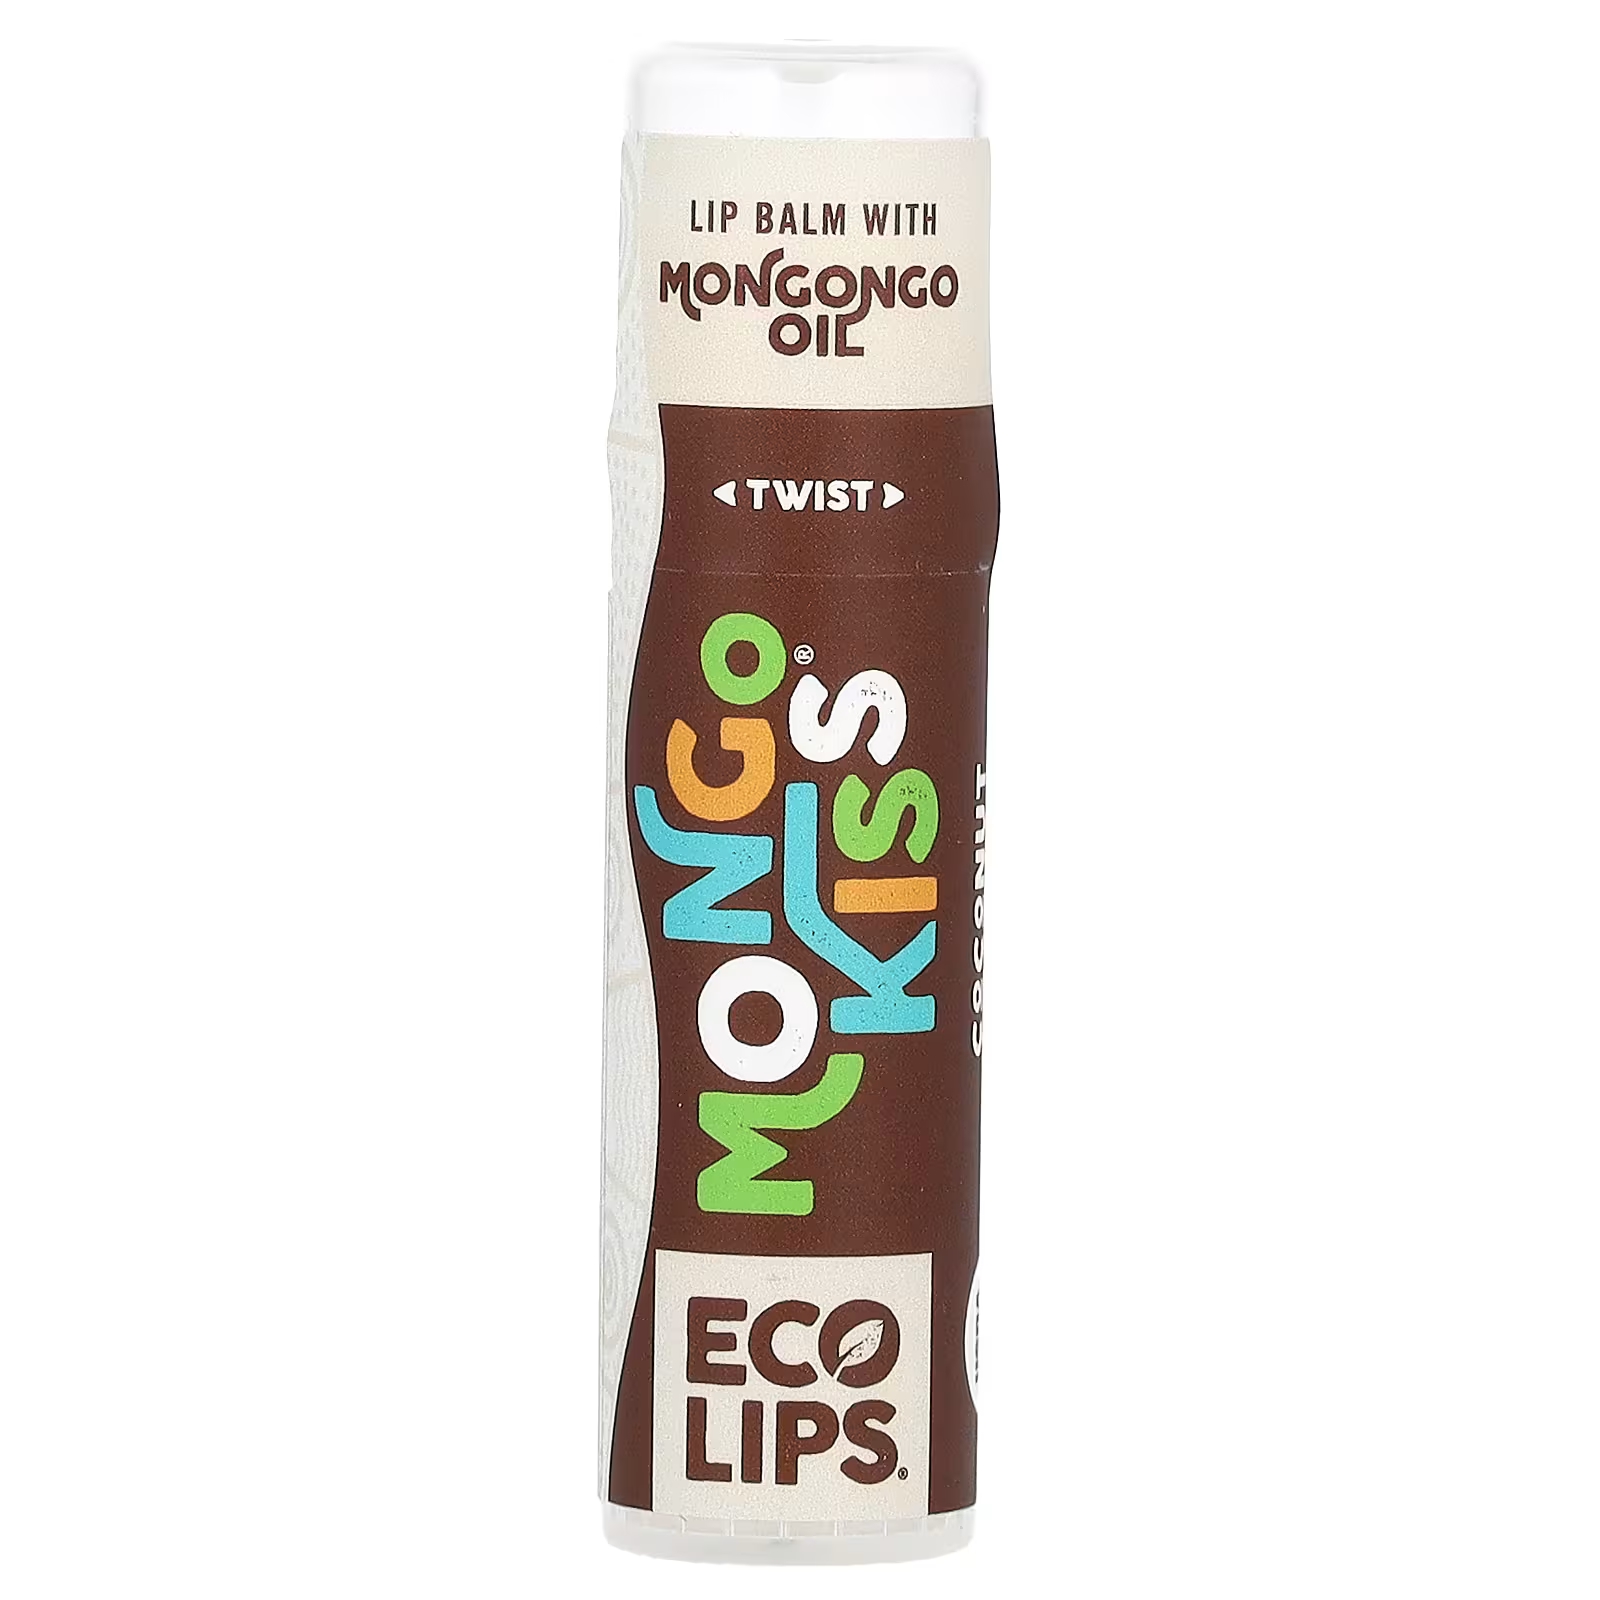 Бальзам для губ Eco Lips Inc. Mongo Kiss с кокосом palmer s бальзам для губ формула масла какао spf15 ухаживающий бальзам для губ шоколад 4 г